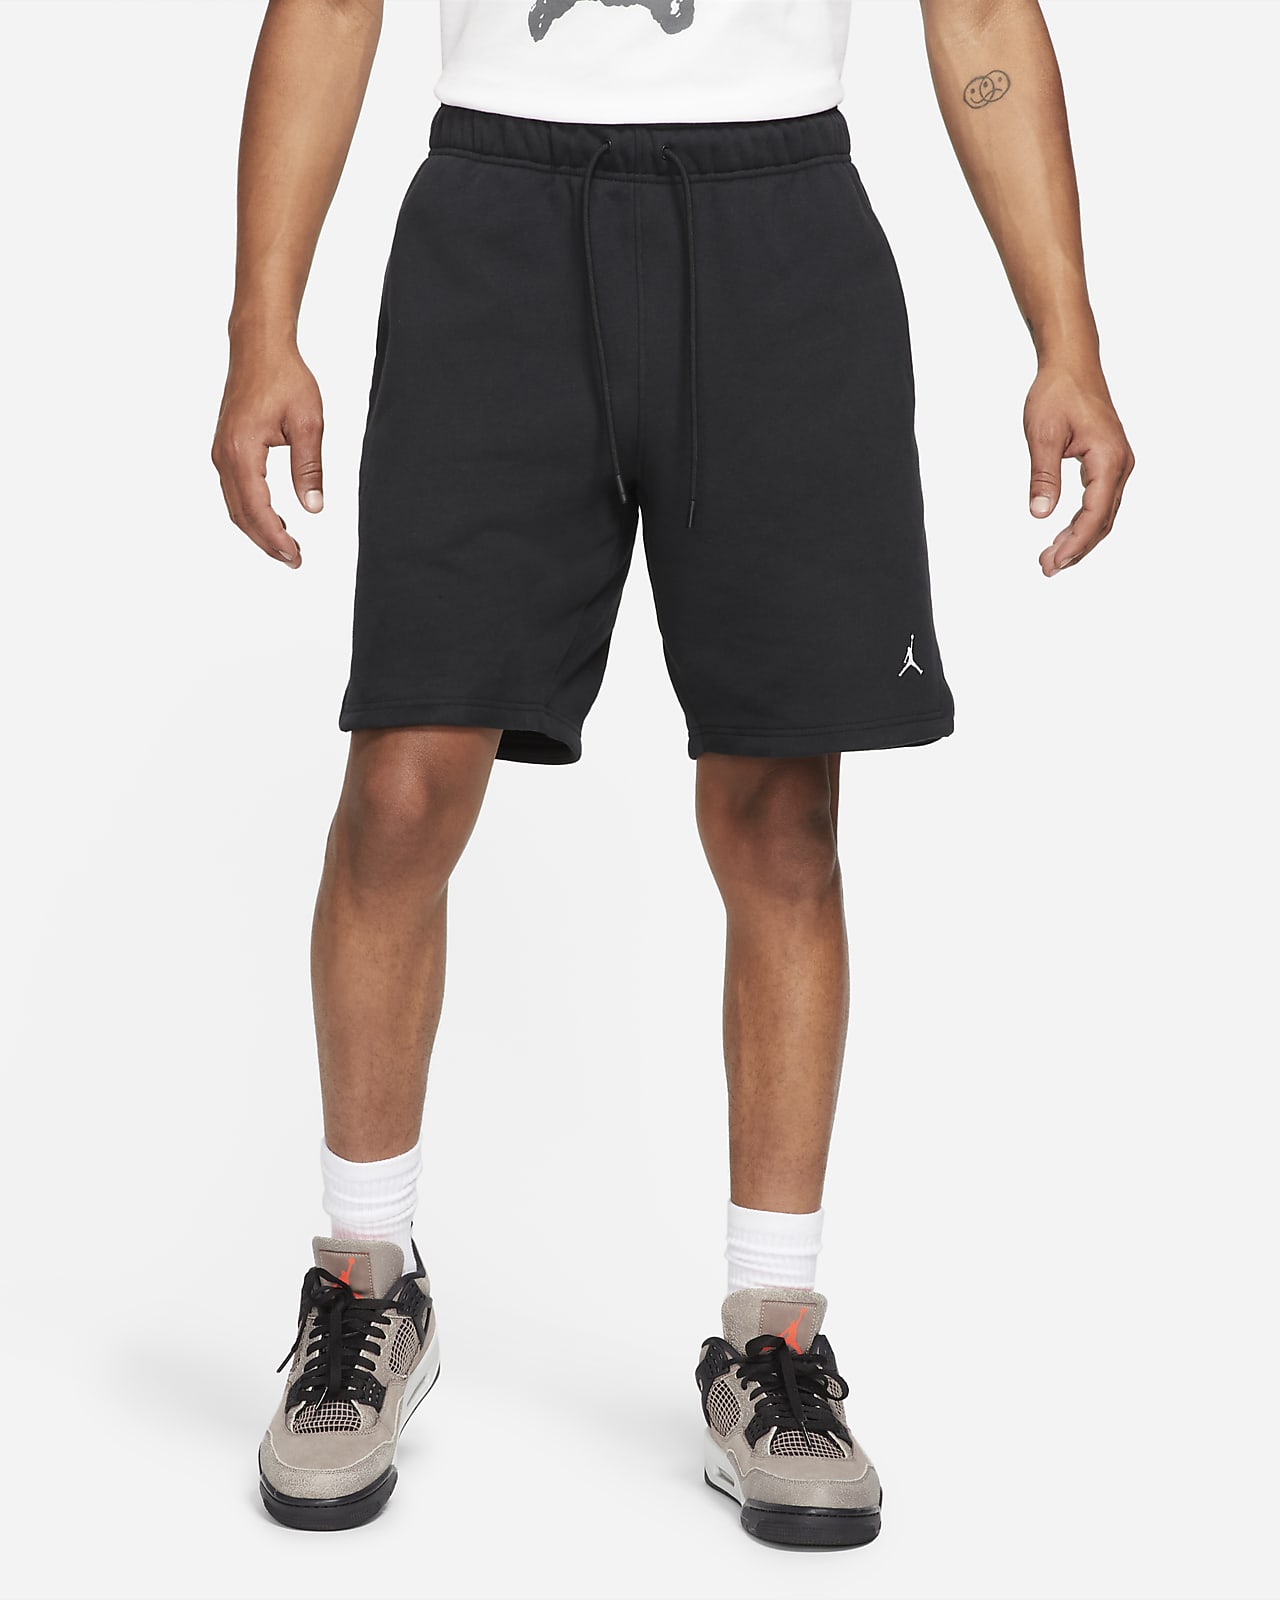 Jordan Essentials Pantalons curts de teixit Fleece - Home